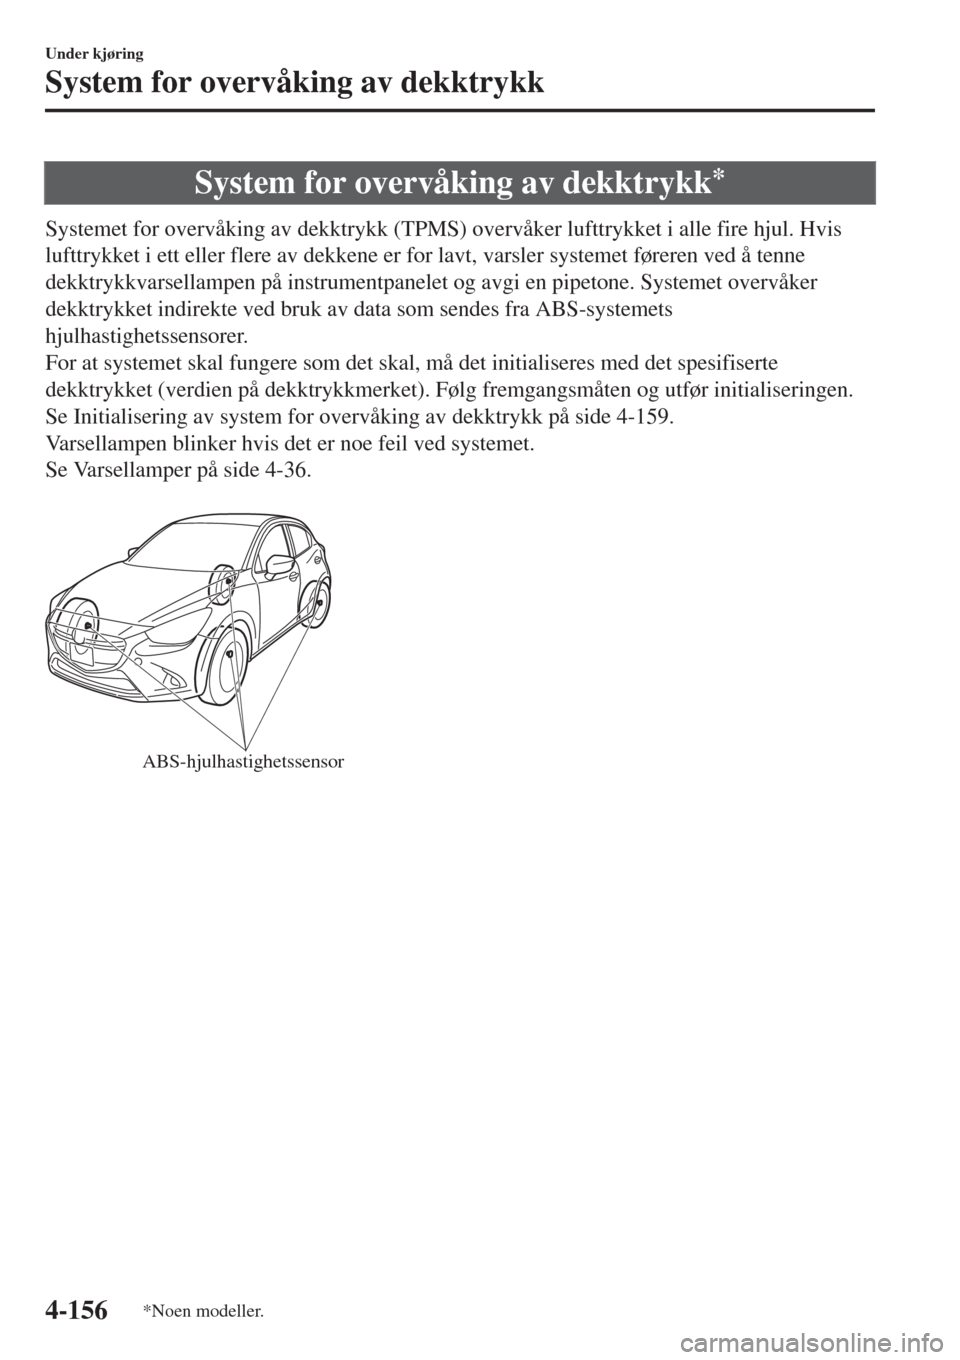 MAZDA MODEL CX-3 2015  Brukerhåndbok (in Norwegian) System for overvåking av dekktrykk*
Systemet for overvåking av dekktrykk (TPMS) overvåker lufttrykket i alle fire hjul. Hvis
lufttrykket i ett eller flere av dekkene er for lavt, varsler systemet f